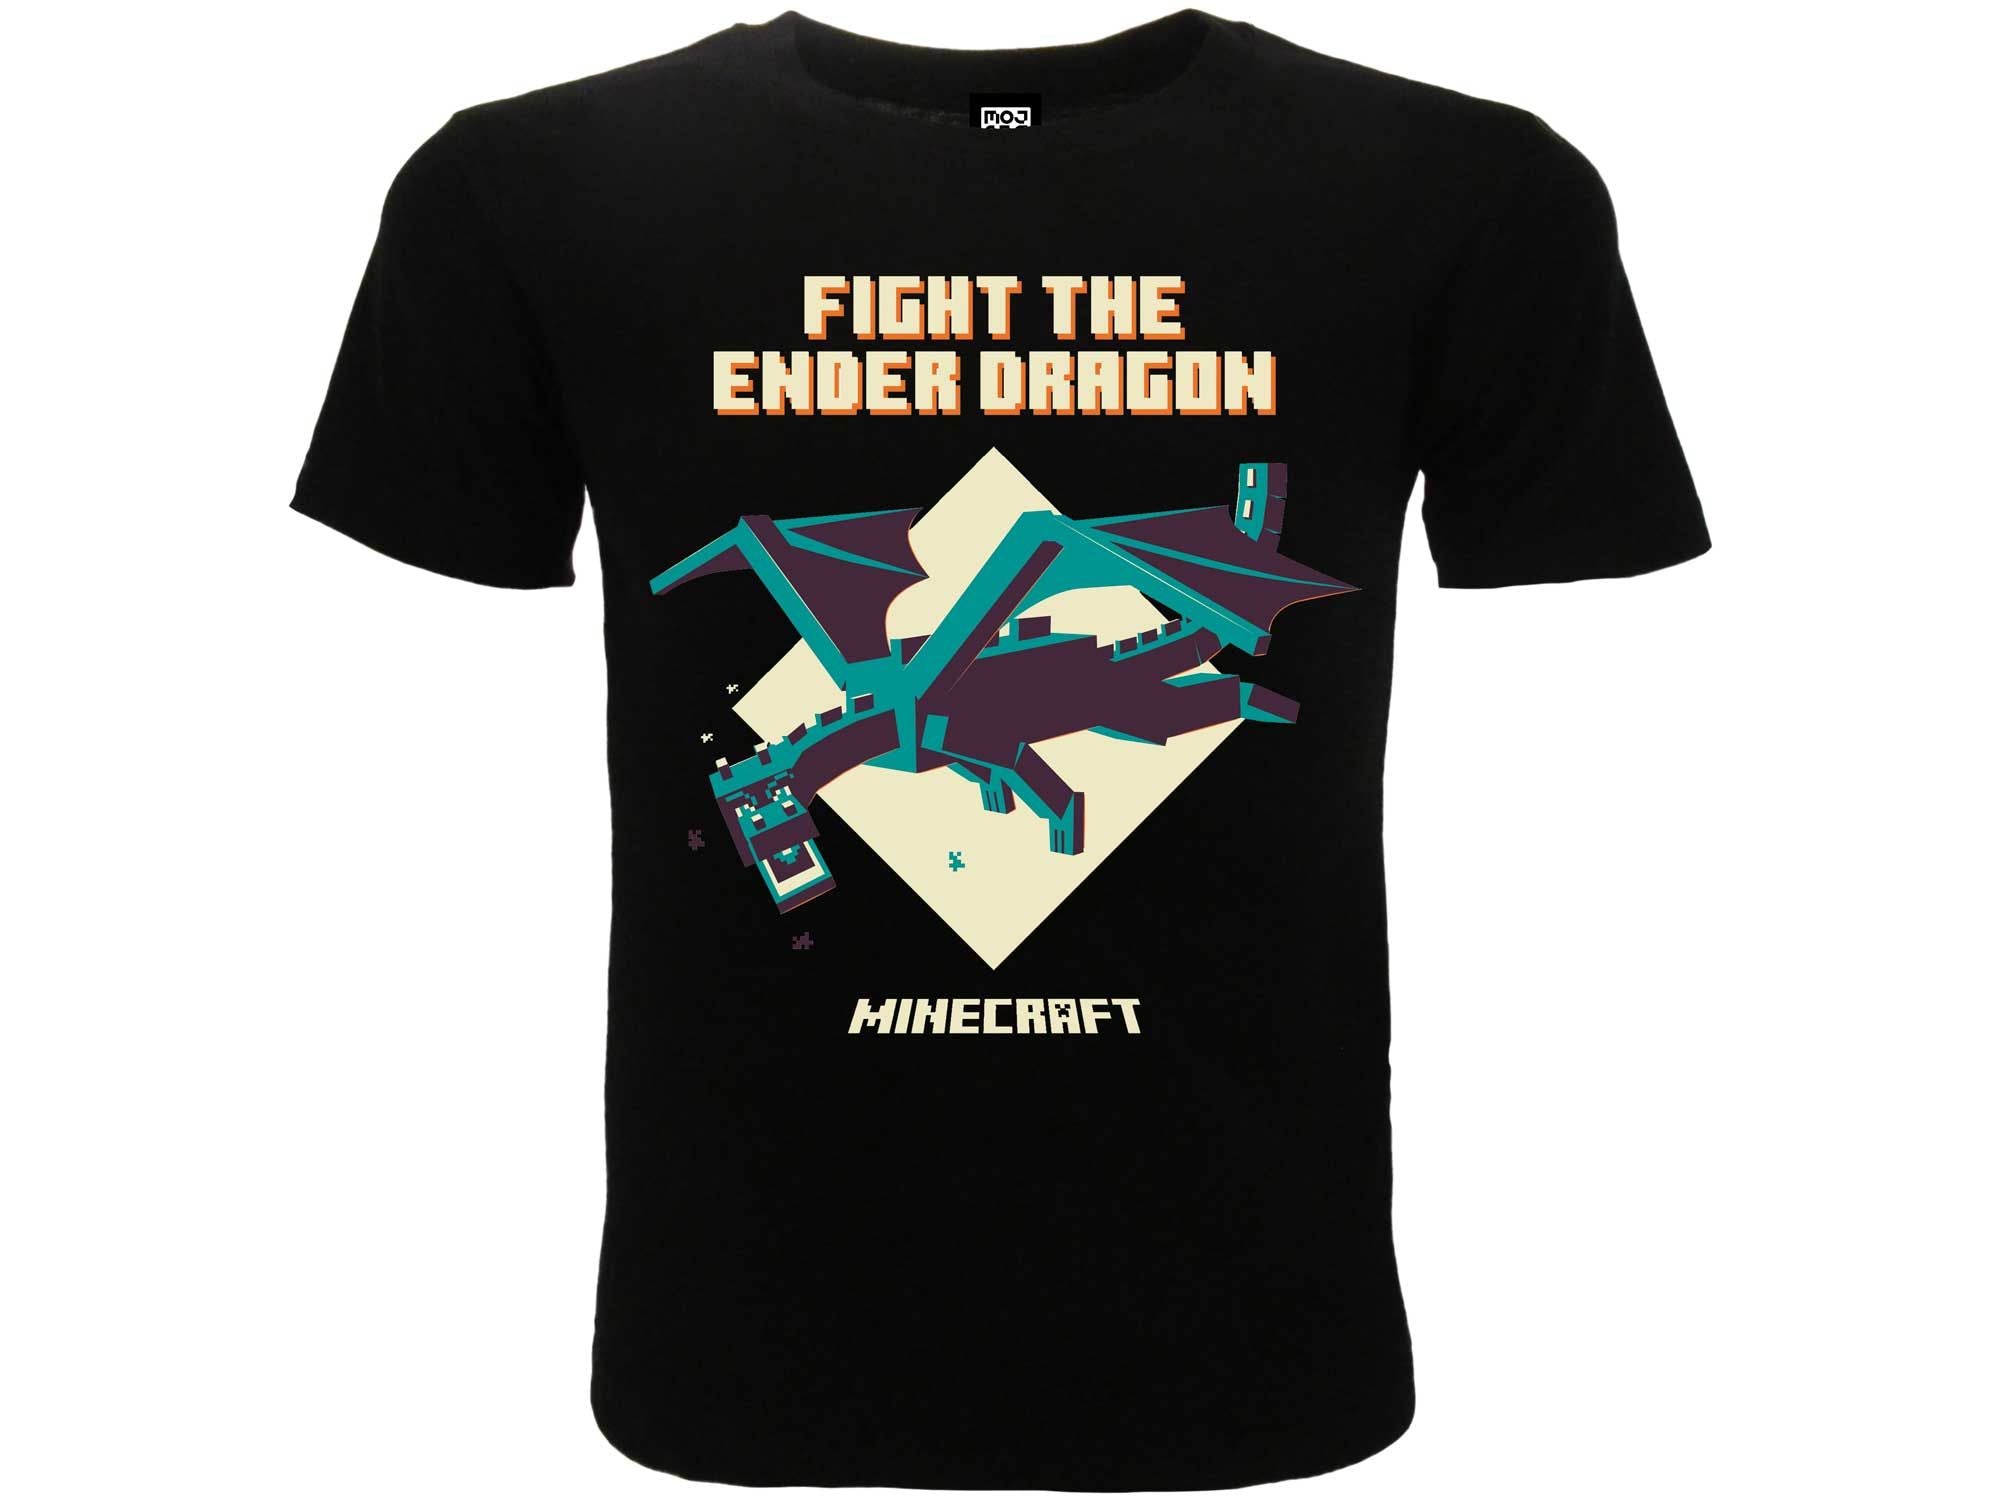 MINECRAFT - "Fight the ender dragon" T-shirt 14/15 anni nera - Disponibile in 2/3 giorni lavorativi